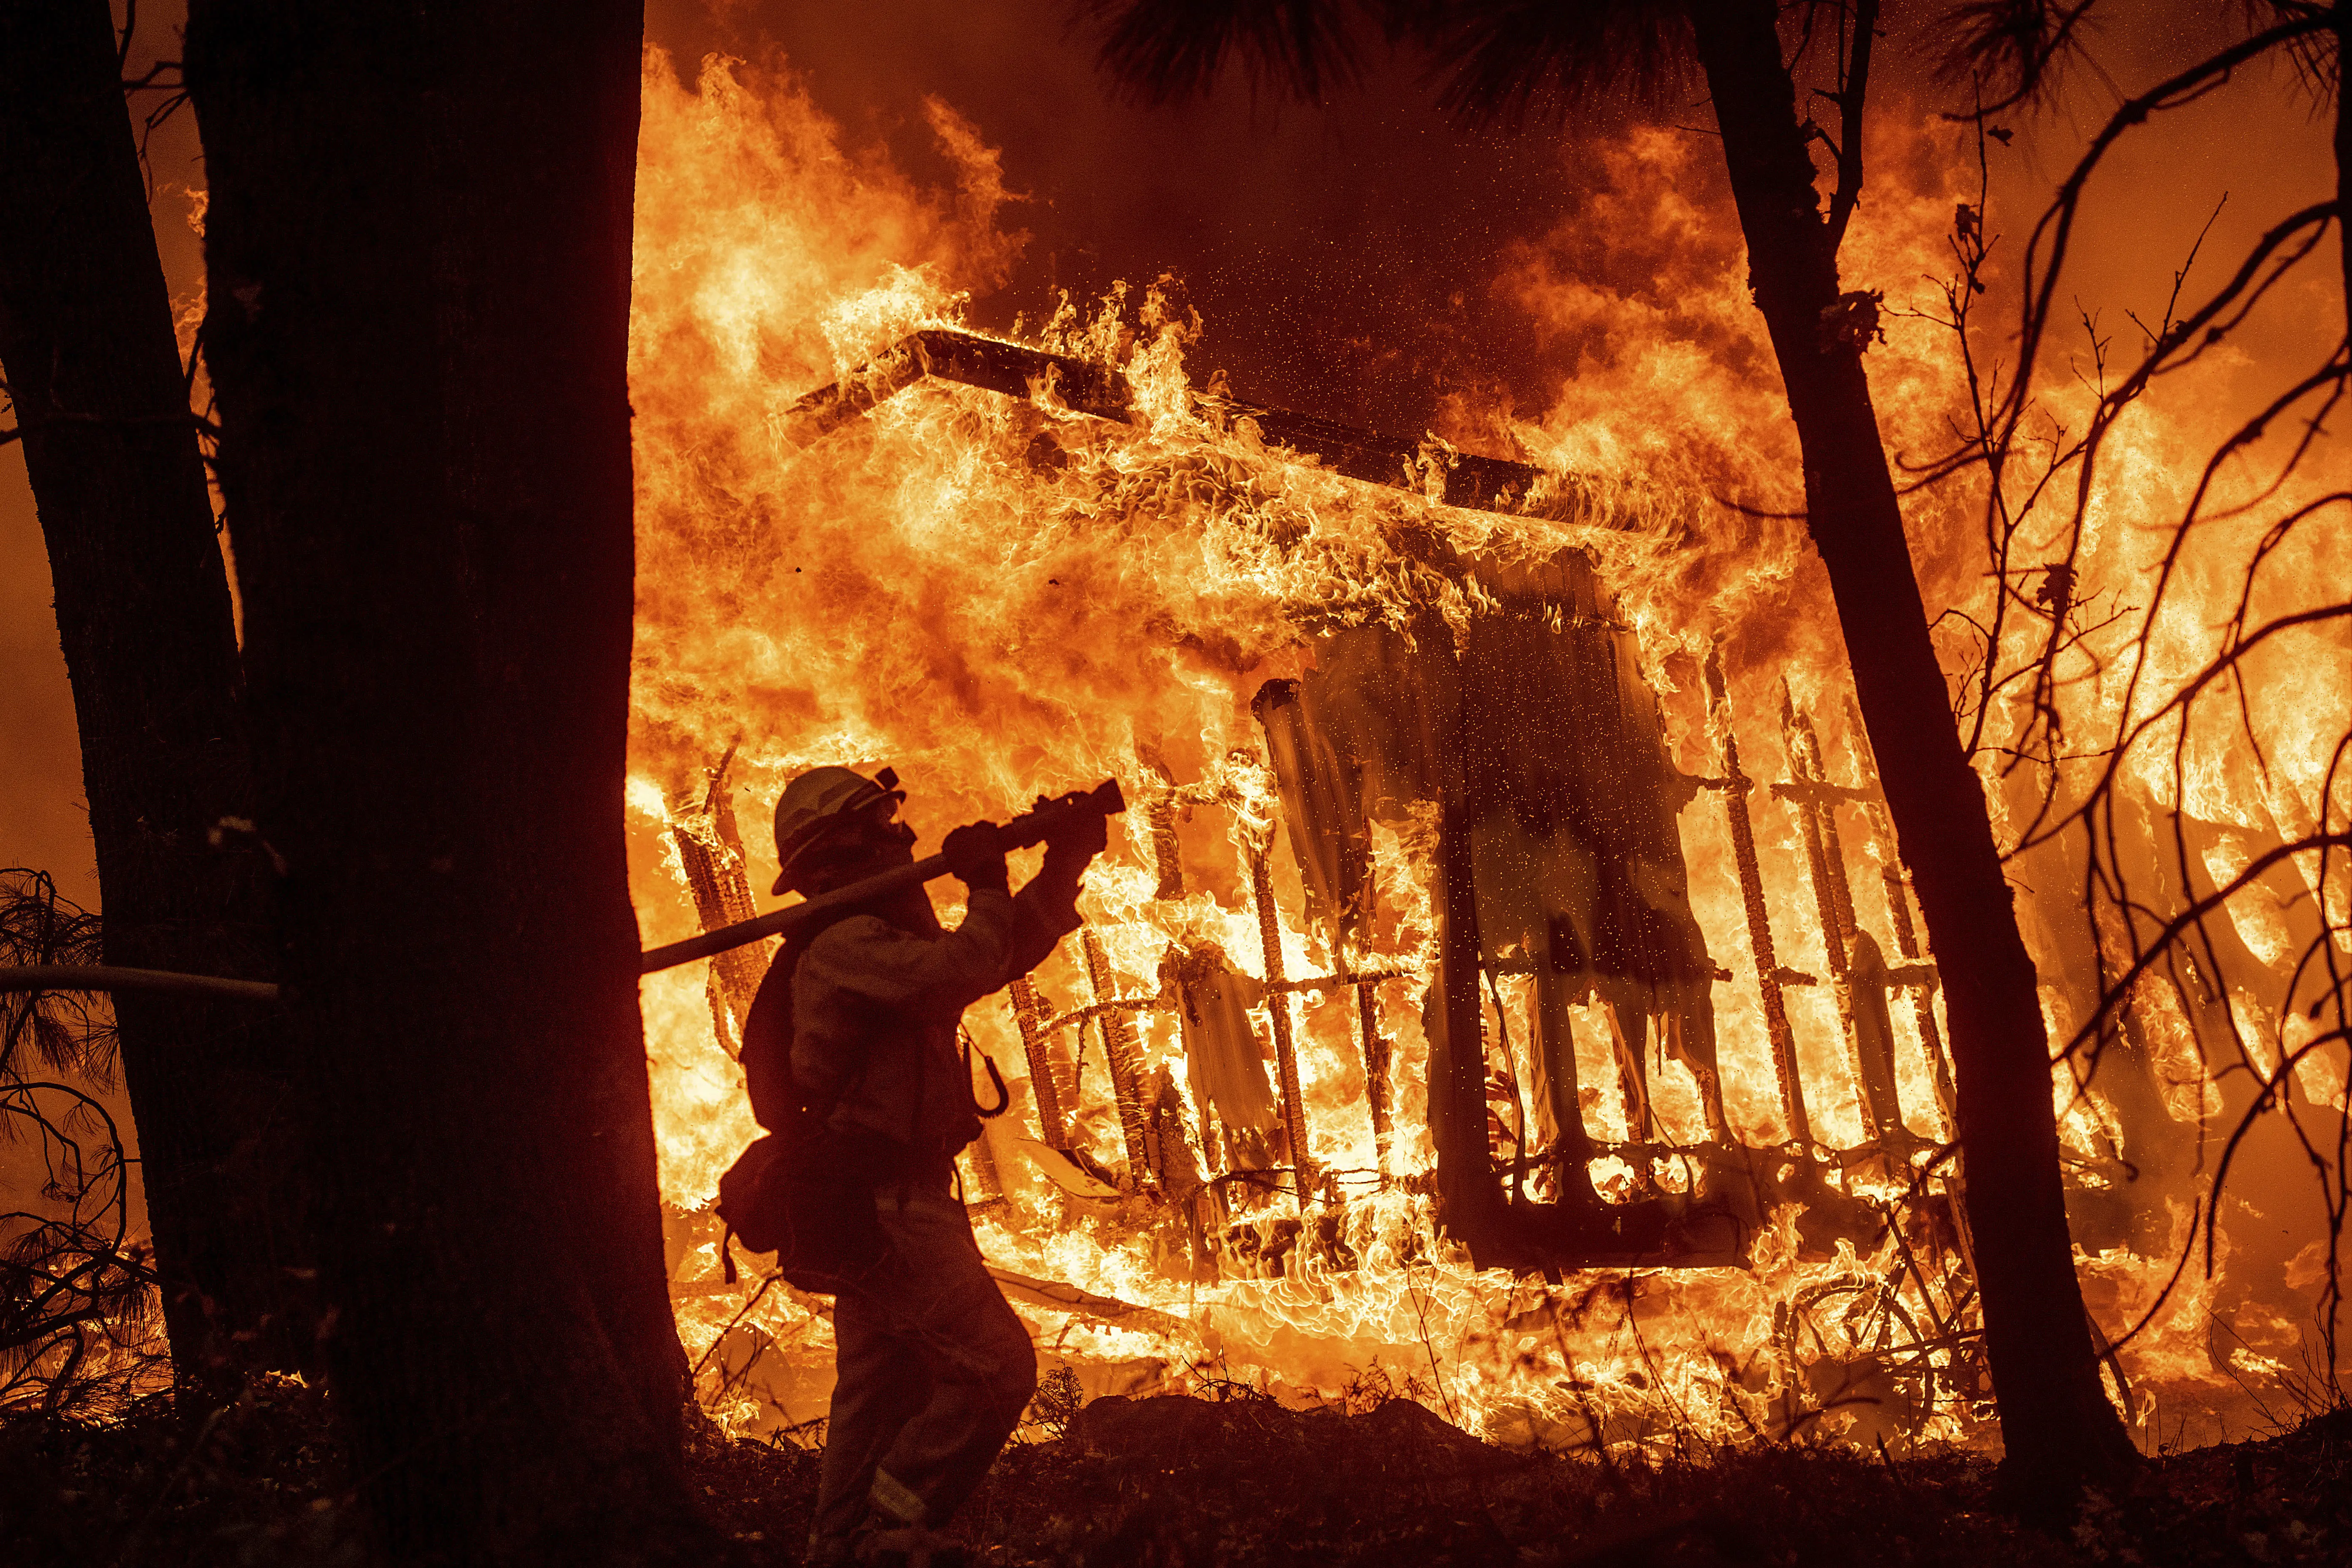 כבאי נלחם בלהבות בשריפות בצפון קליפורניה 11 בנובמבר 2018